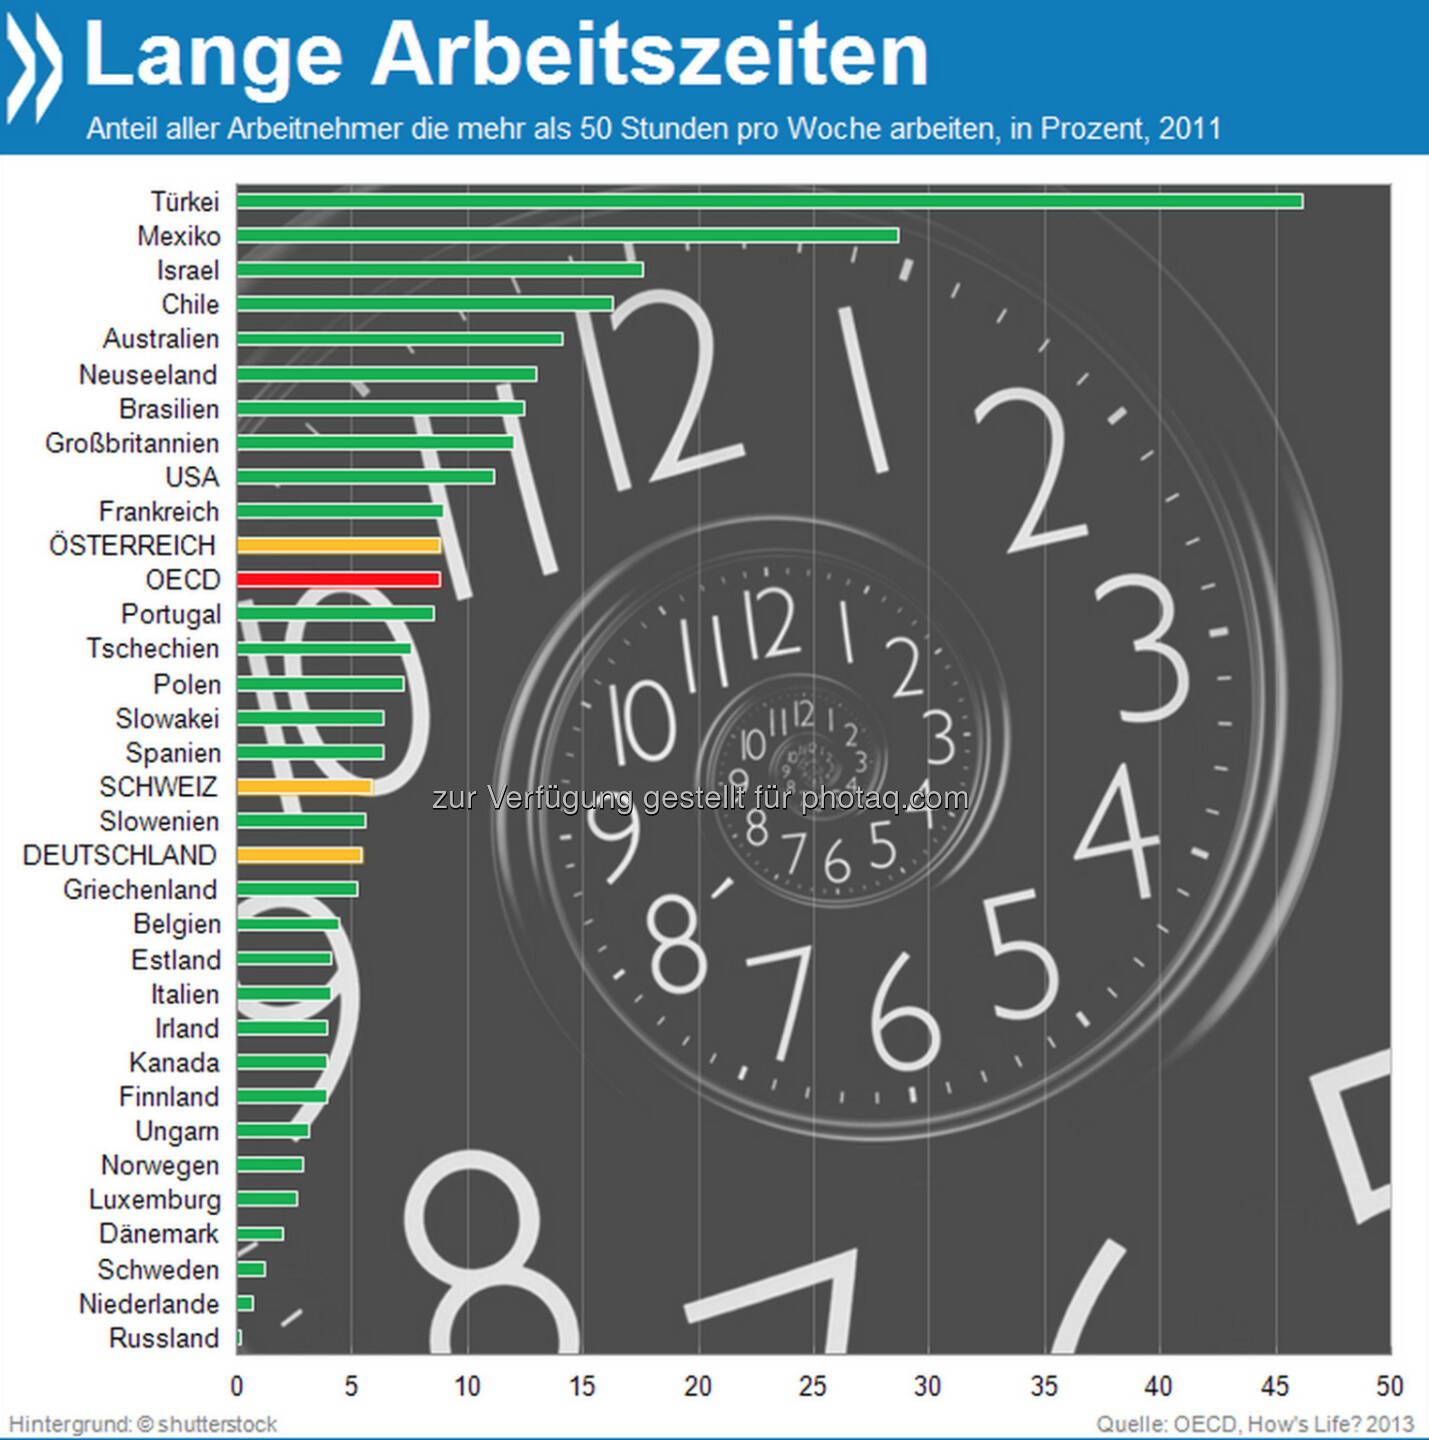 Not just 9 to 5! In der Türkei arbeiten 46 Prozent der Arbeitnehmer mehr als 50 Stunden pro Woche. In Deutschland und der Schweiz sind solche Arbeitszeiten eher die Ausnahme.

Mehr unter http://bit.ly/HDXvyS (How's Life? 2013: Measuring Well-being, S.51)